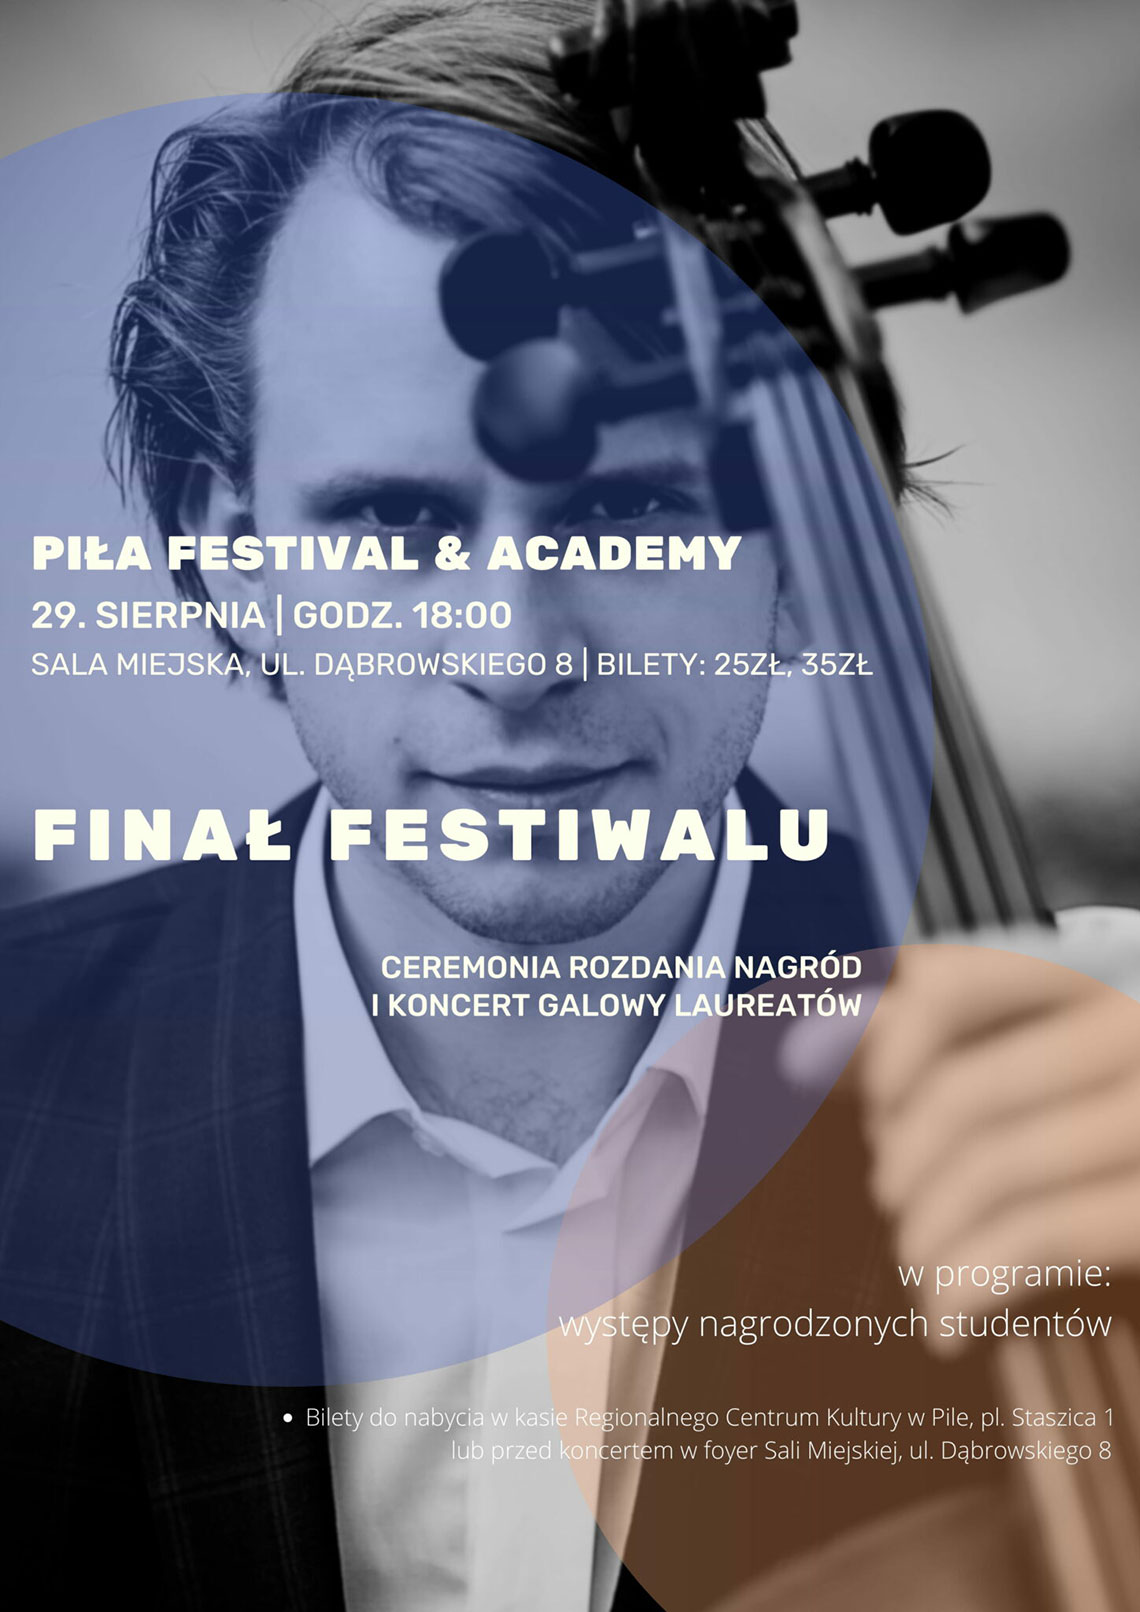 pila festival 29 08 2021